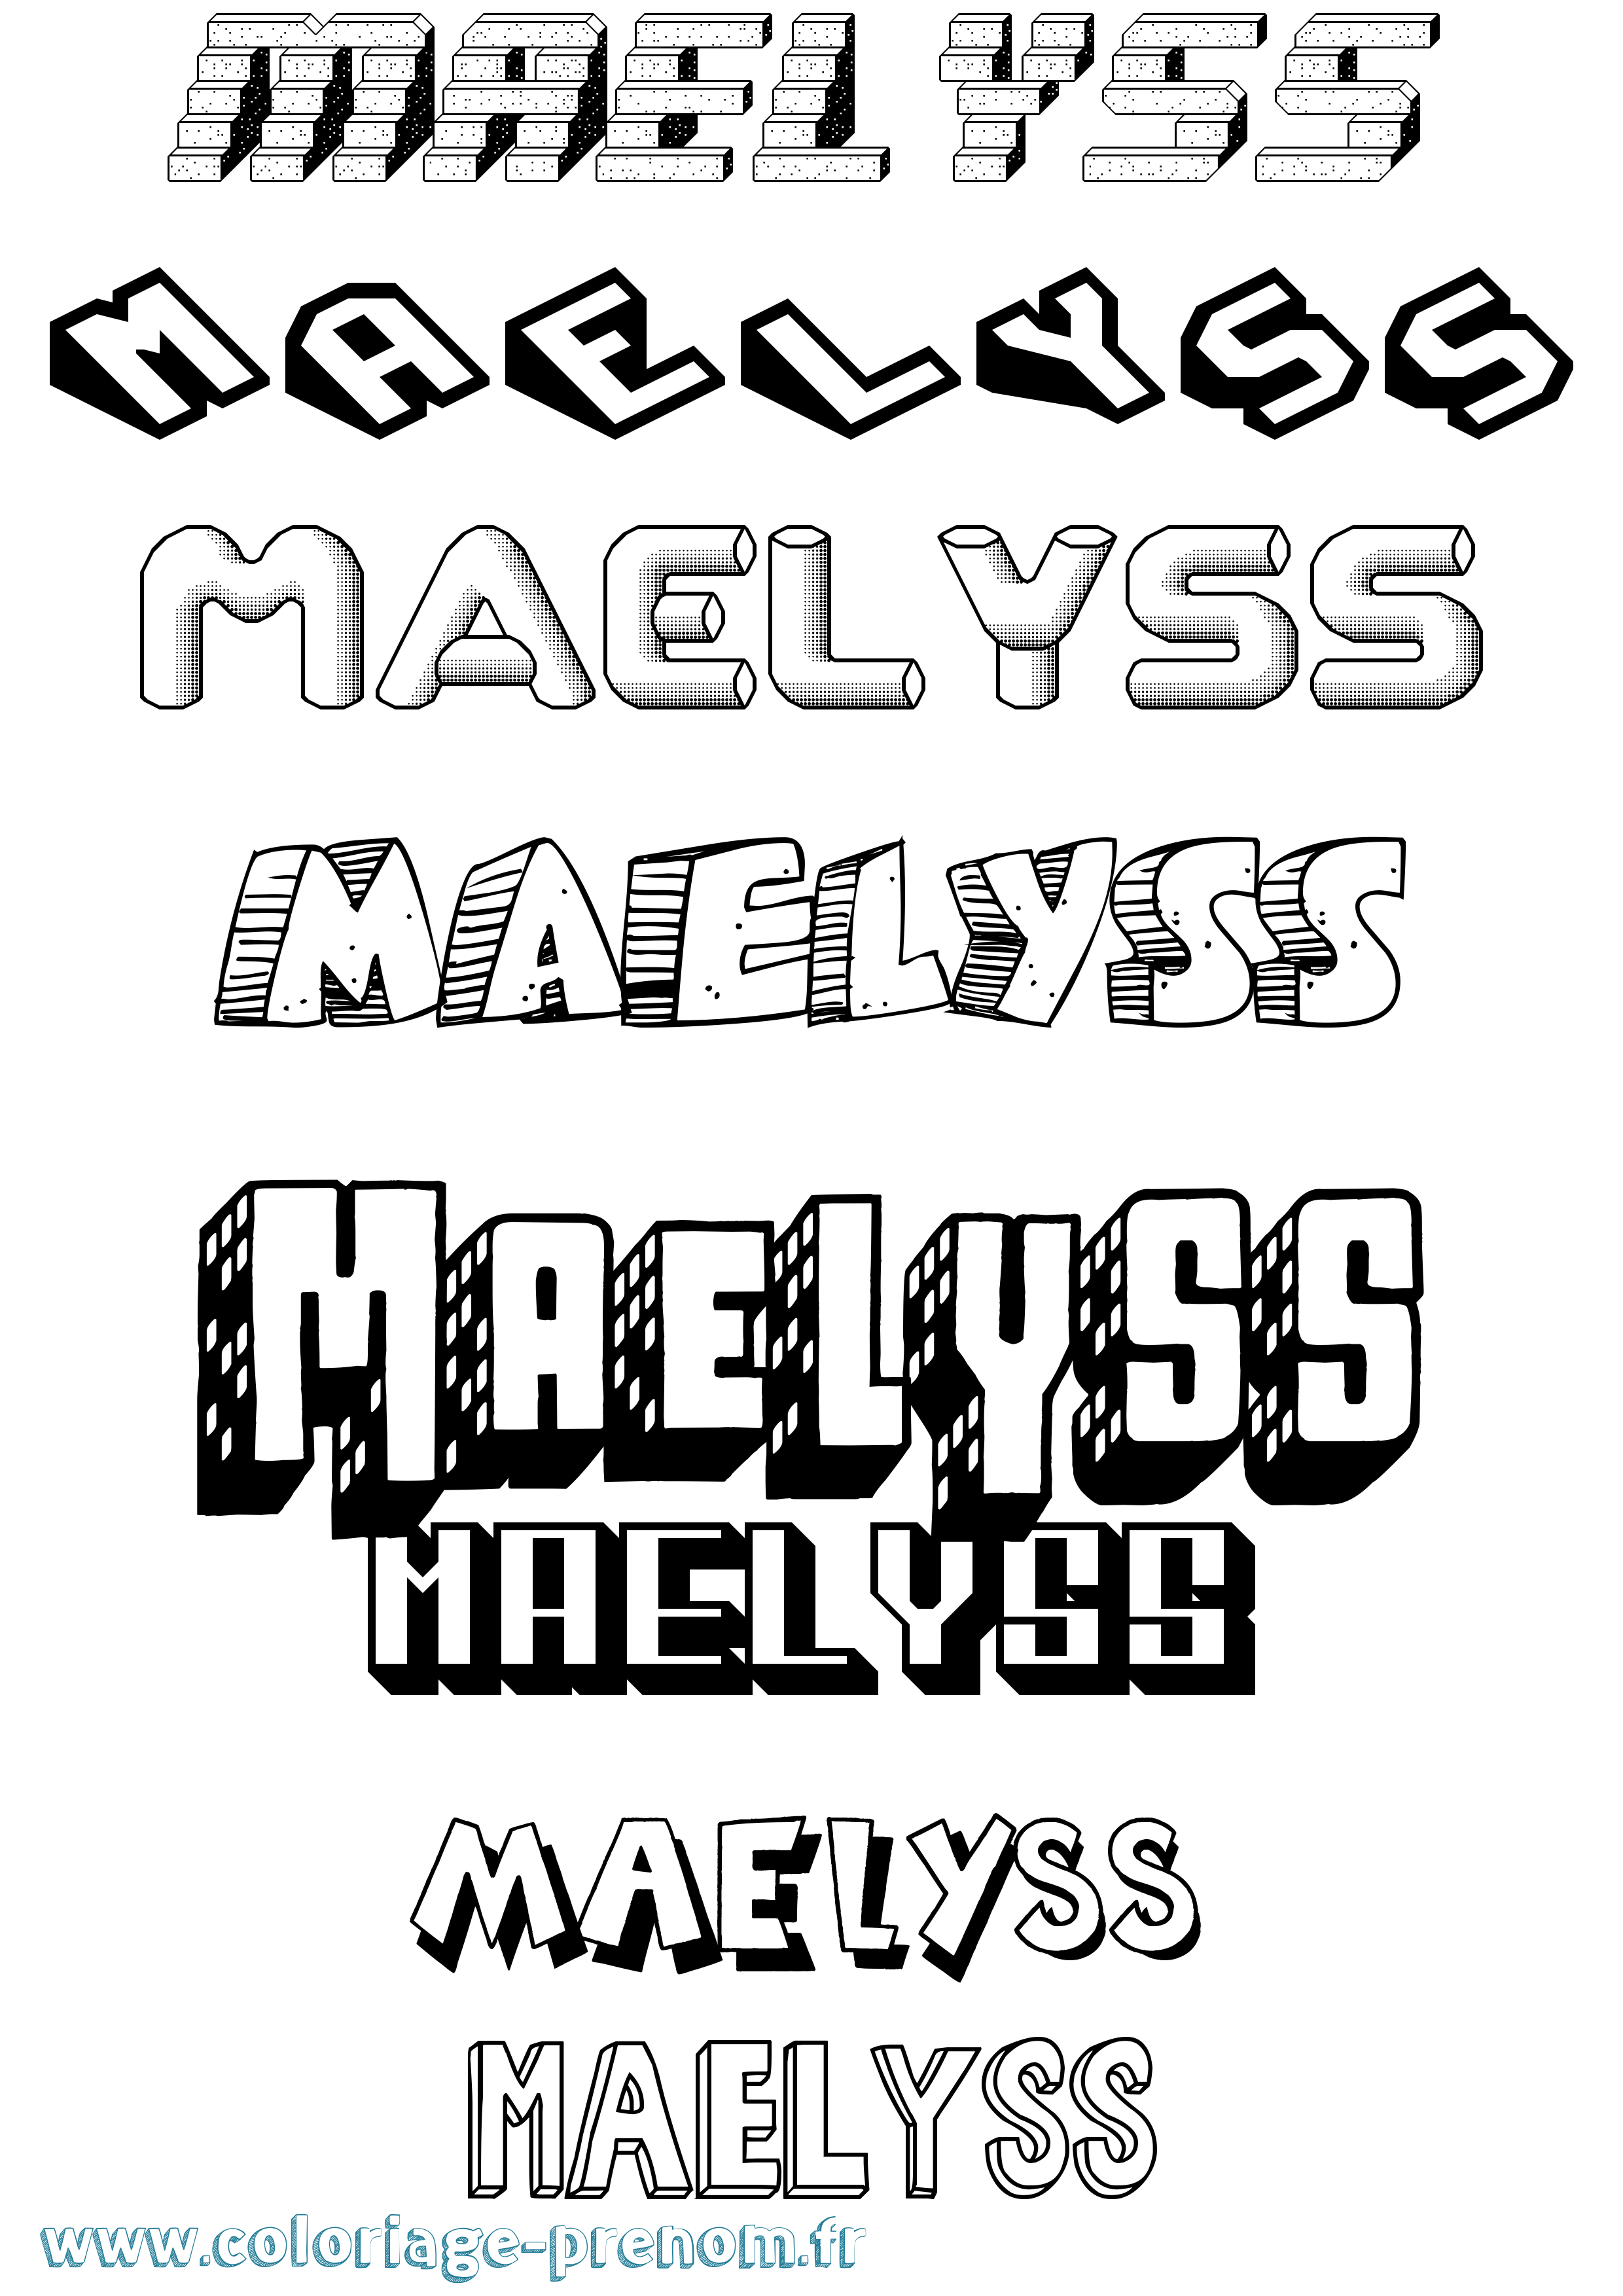 Coloriage prénom Maelyss Effet 3D